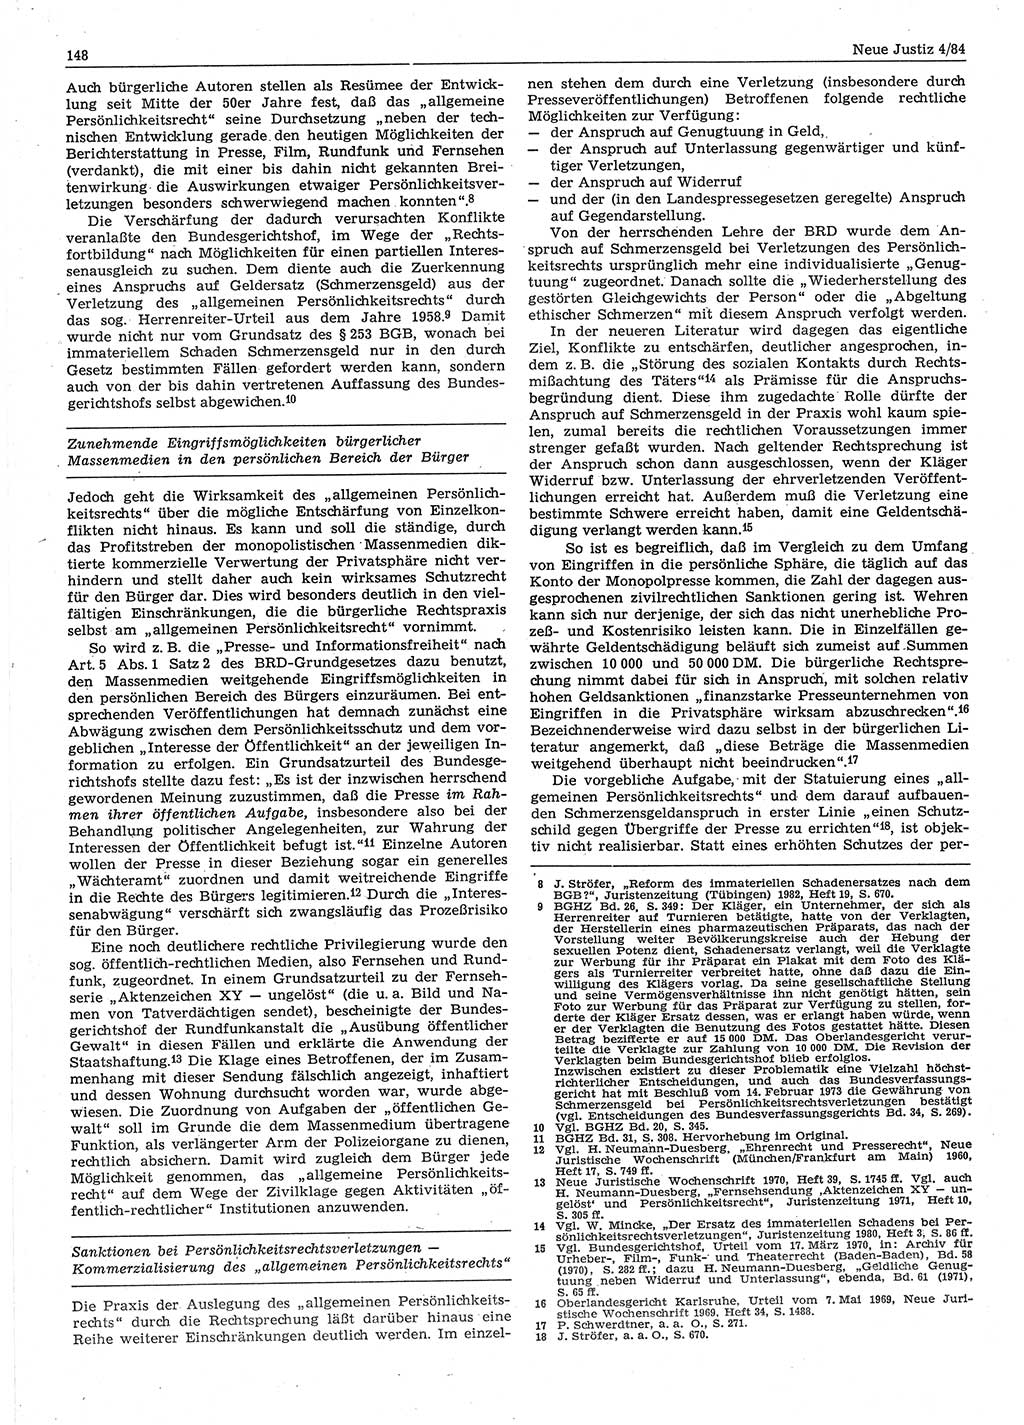 Neue Justiz (NJ), Zeitschrift für sozialistisches Recht und Gesetzlichkeit [Deutsche Demokratische Republik (DDR)], 38. Jahrgang 1984, Seite 148 (NJ DDR 1984, S. 148)